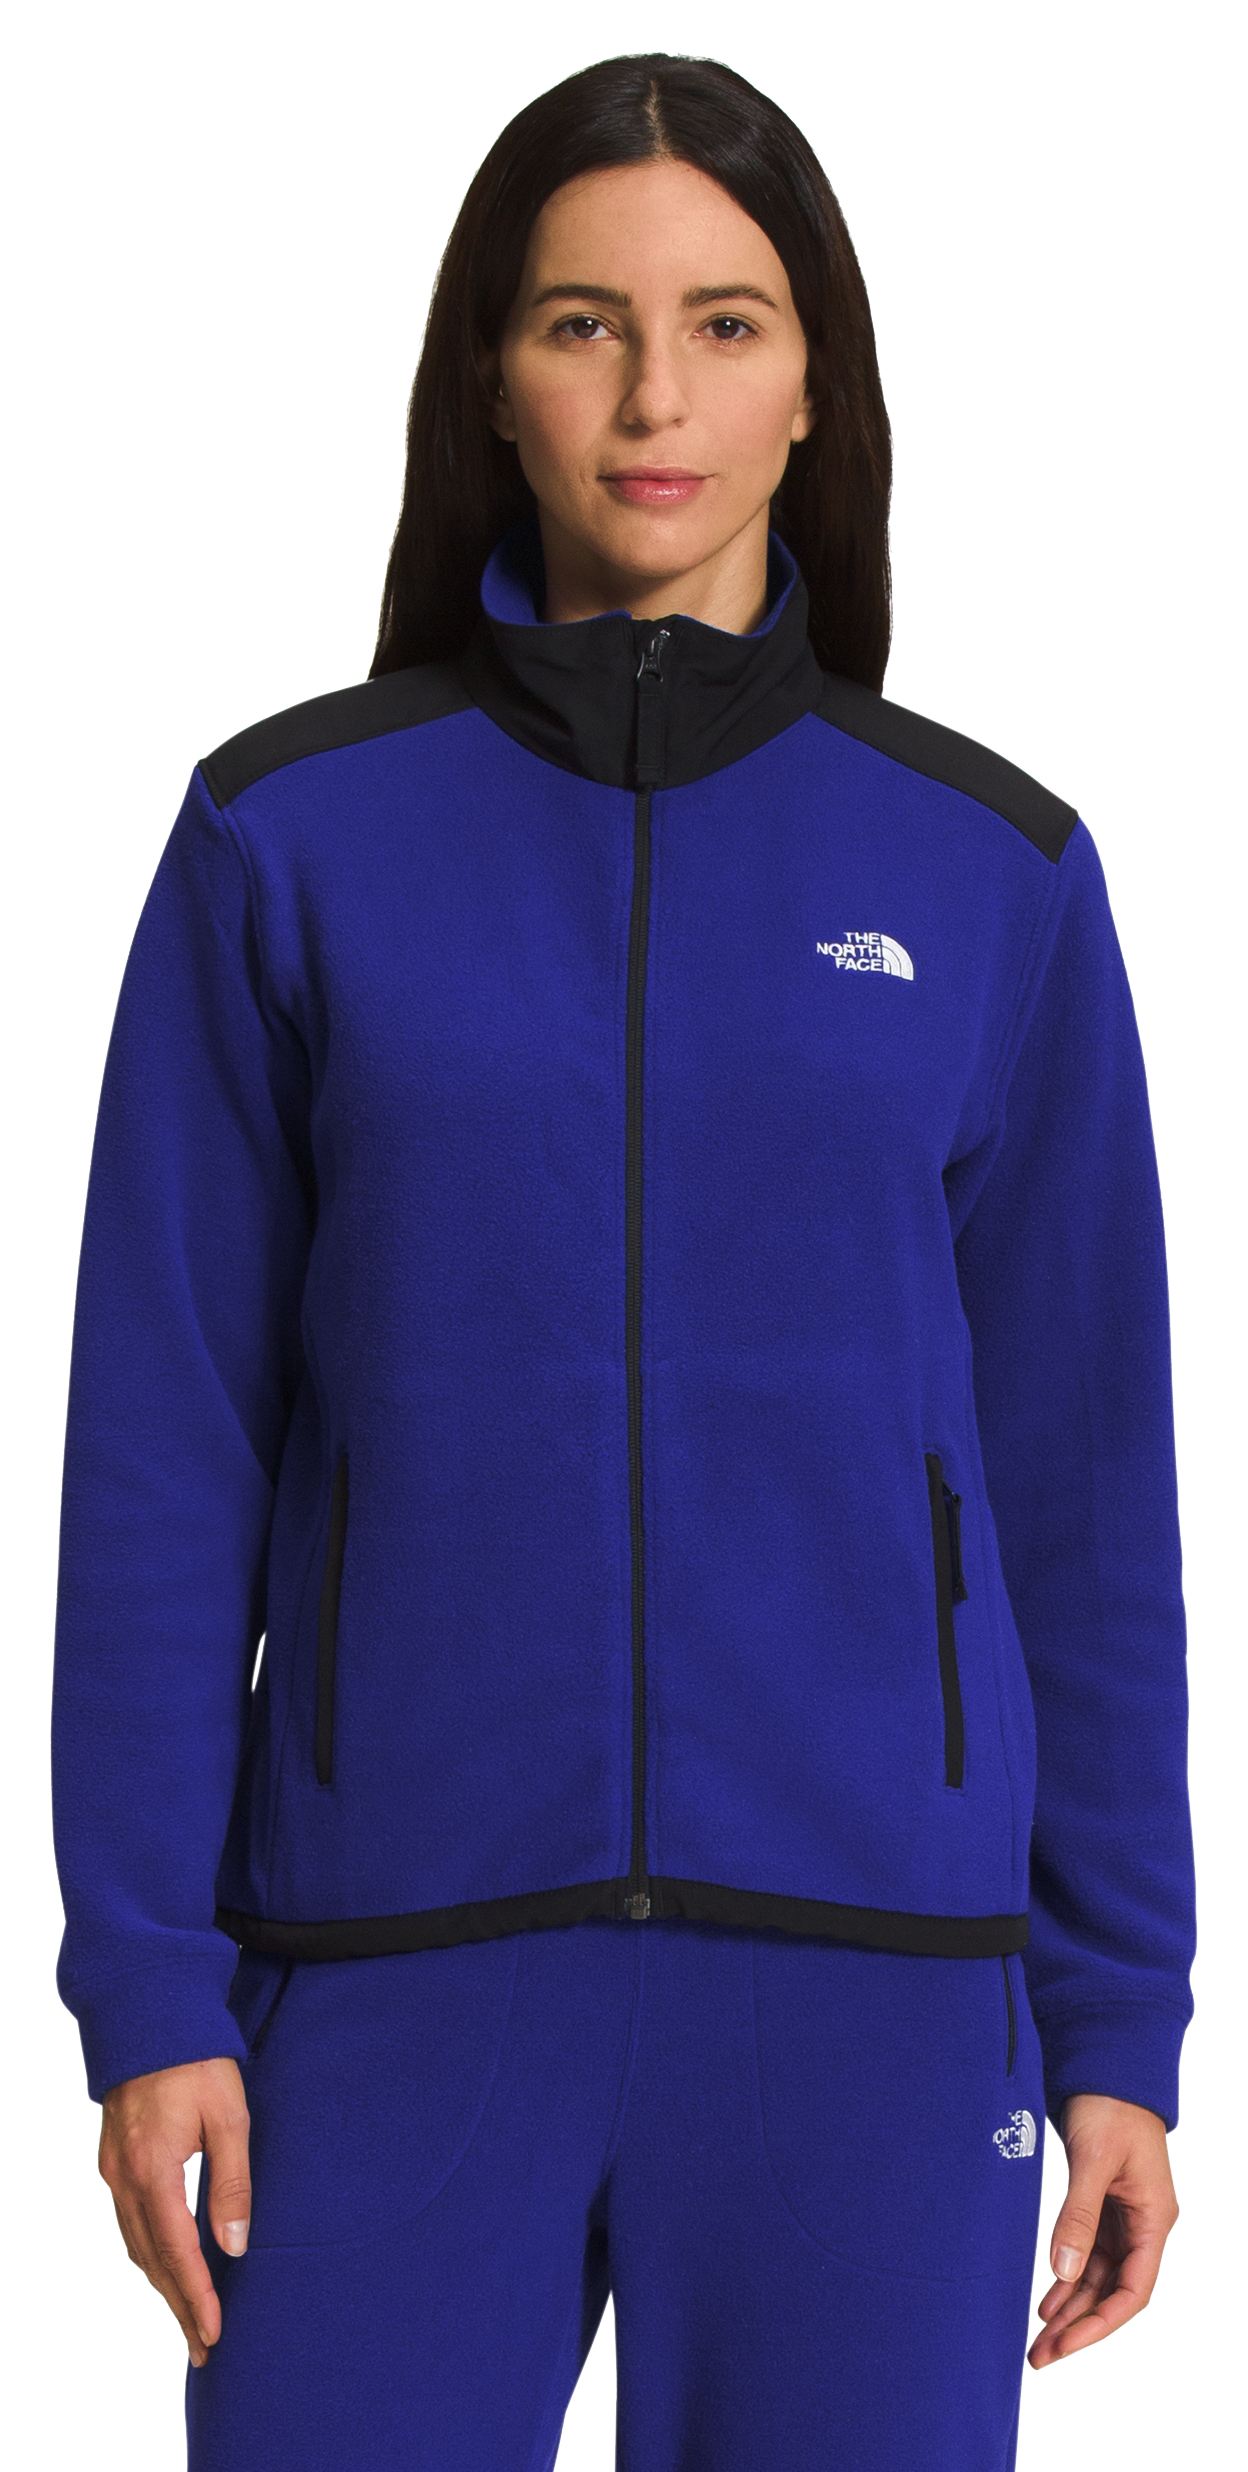 The North Face Alpine Polartec 200 Full-Zip Jacket for Ladies - Lapis Blue/TNF Black - M